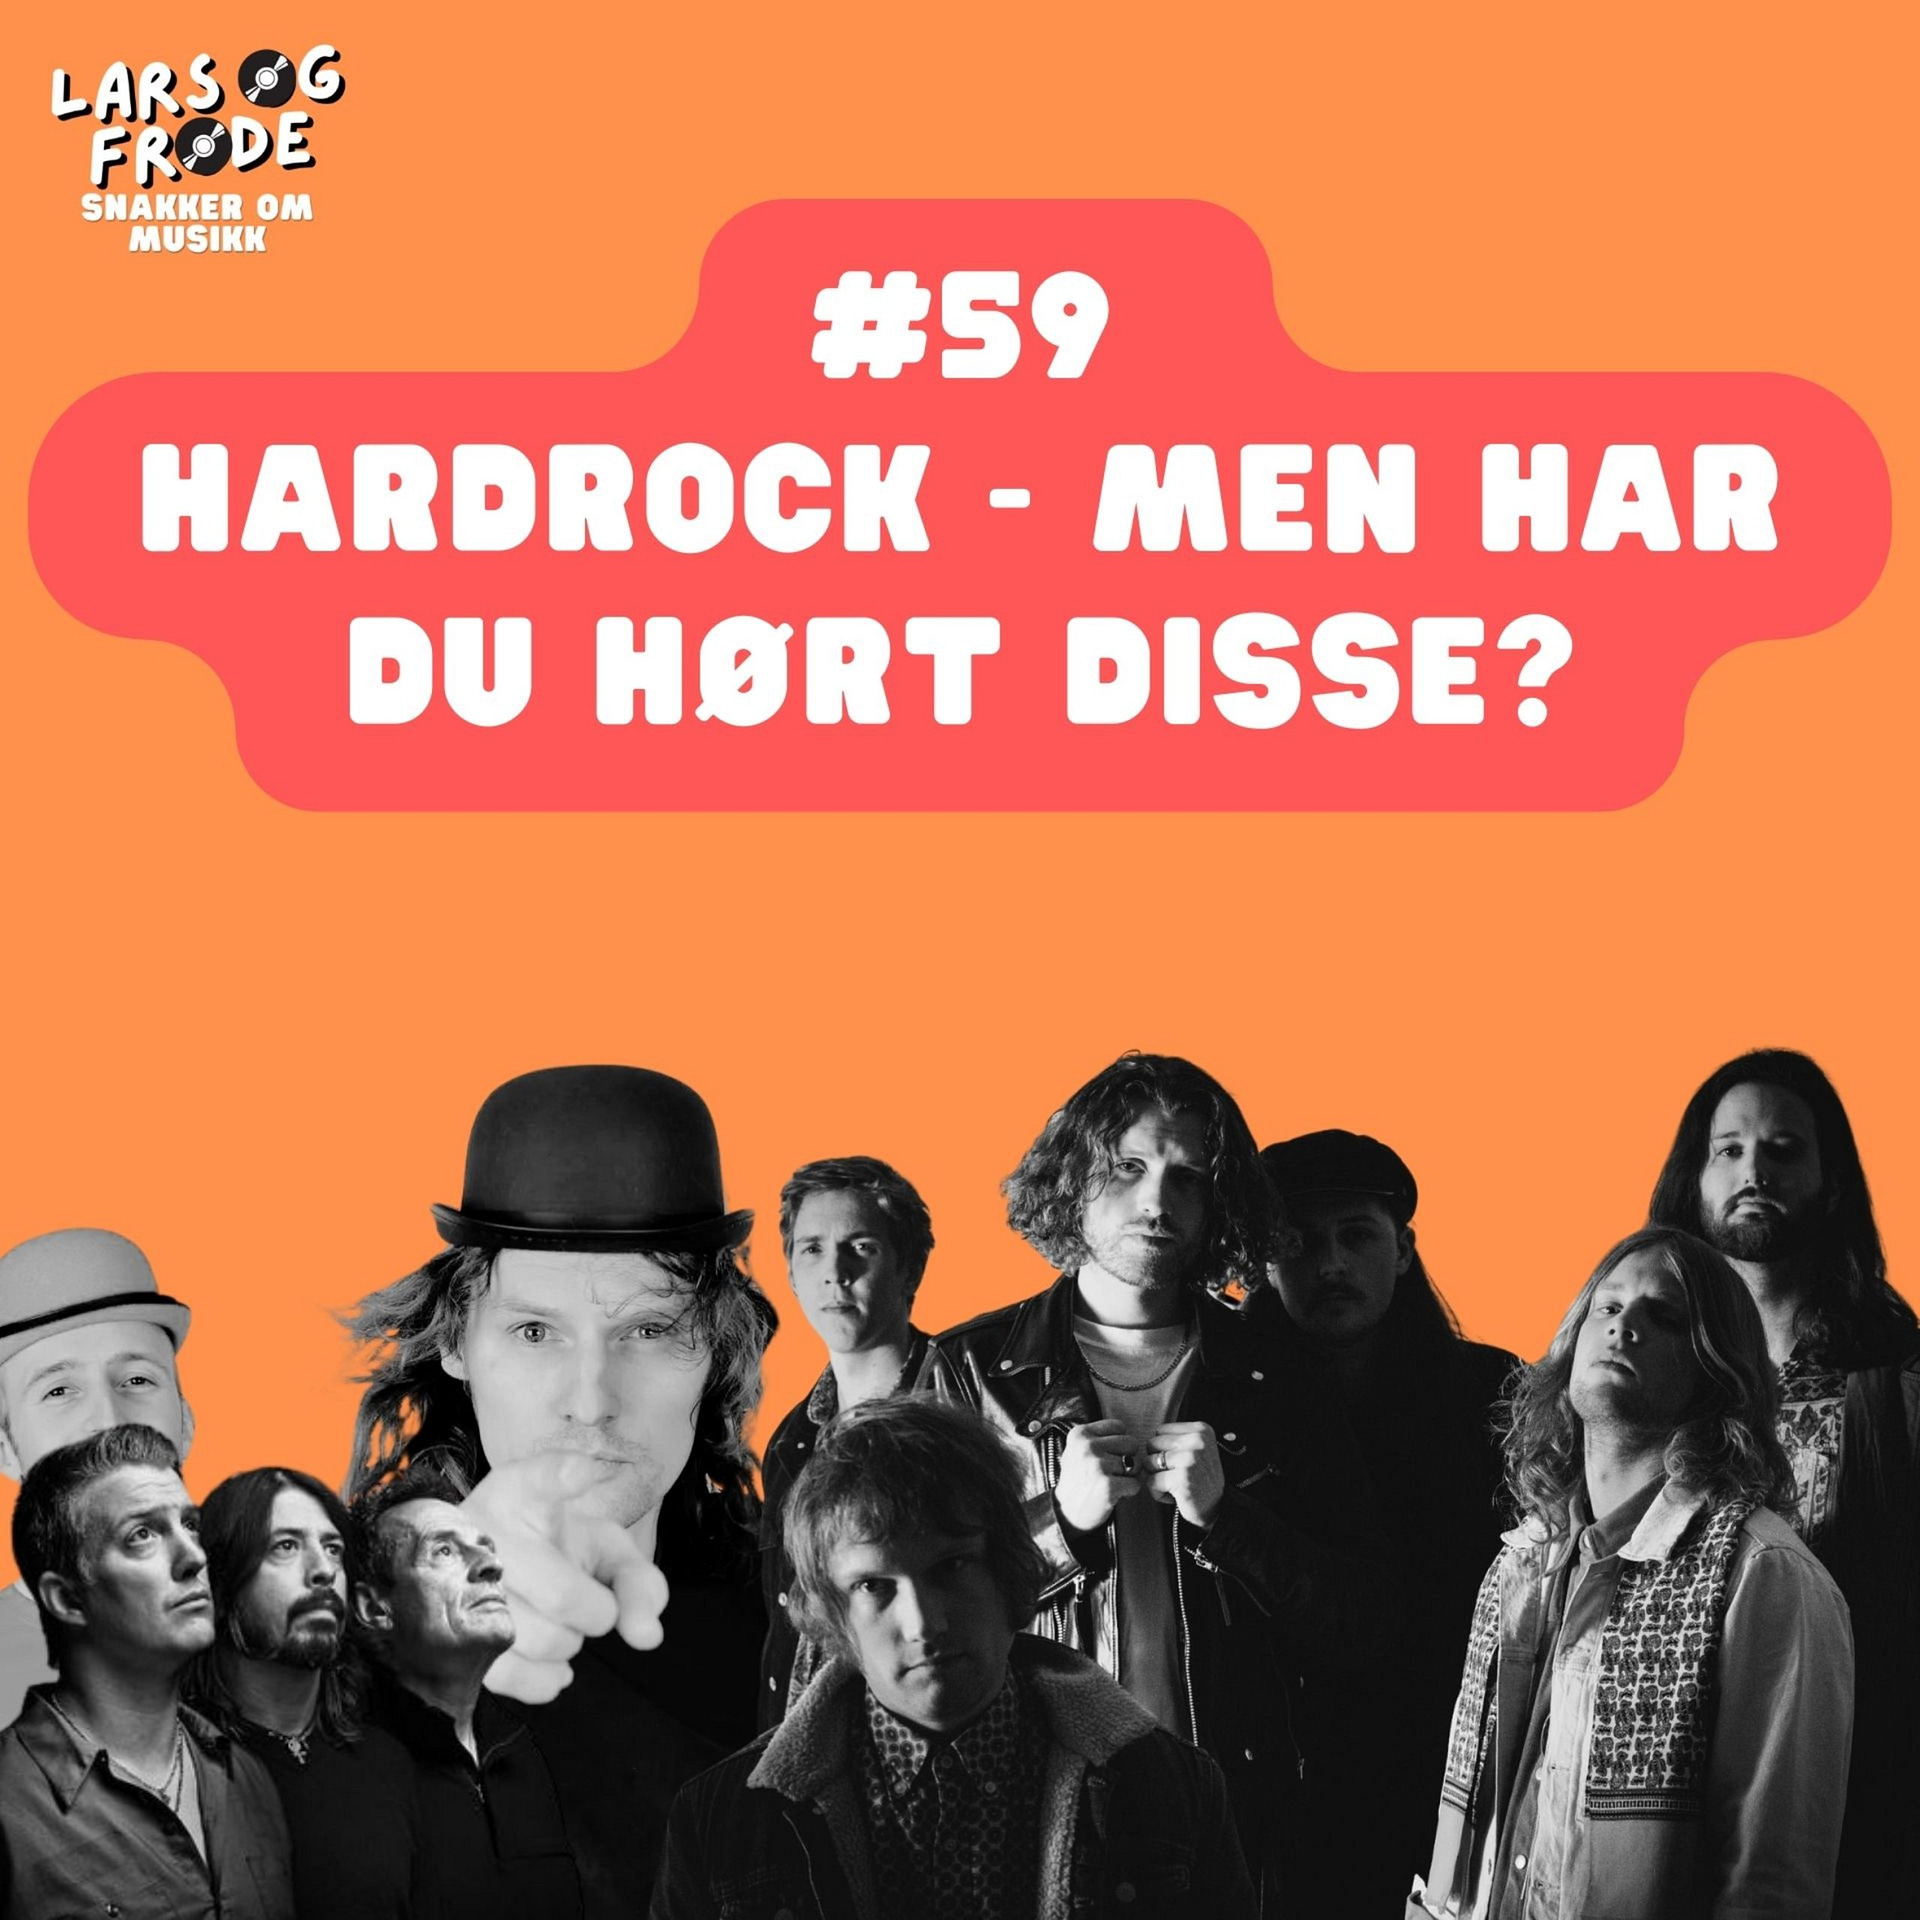 Hardrock – Men har du hørt disse?